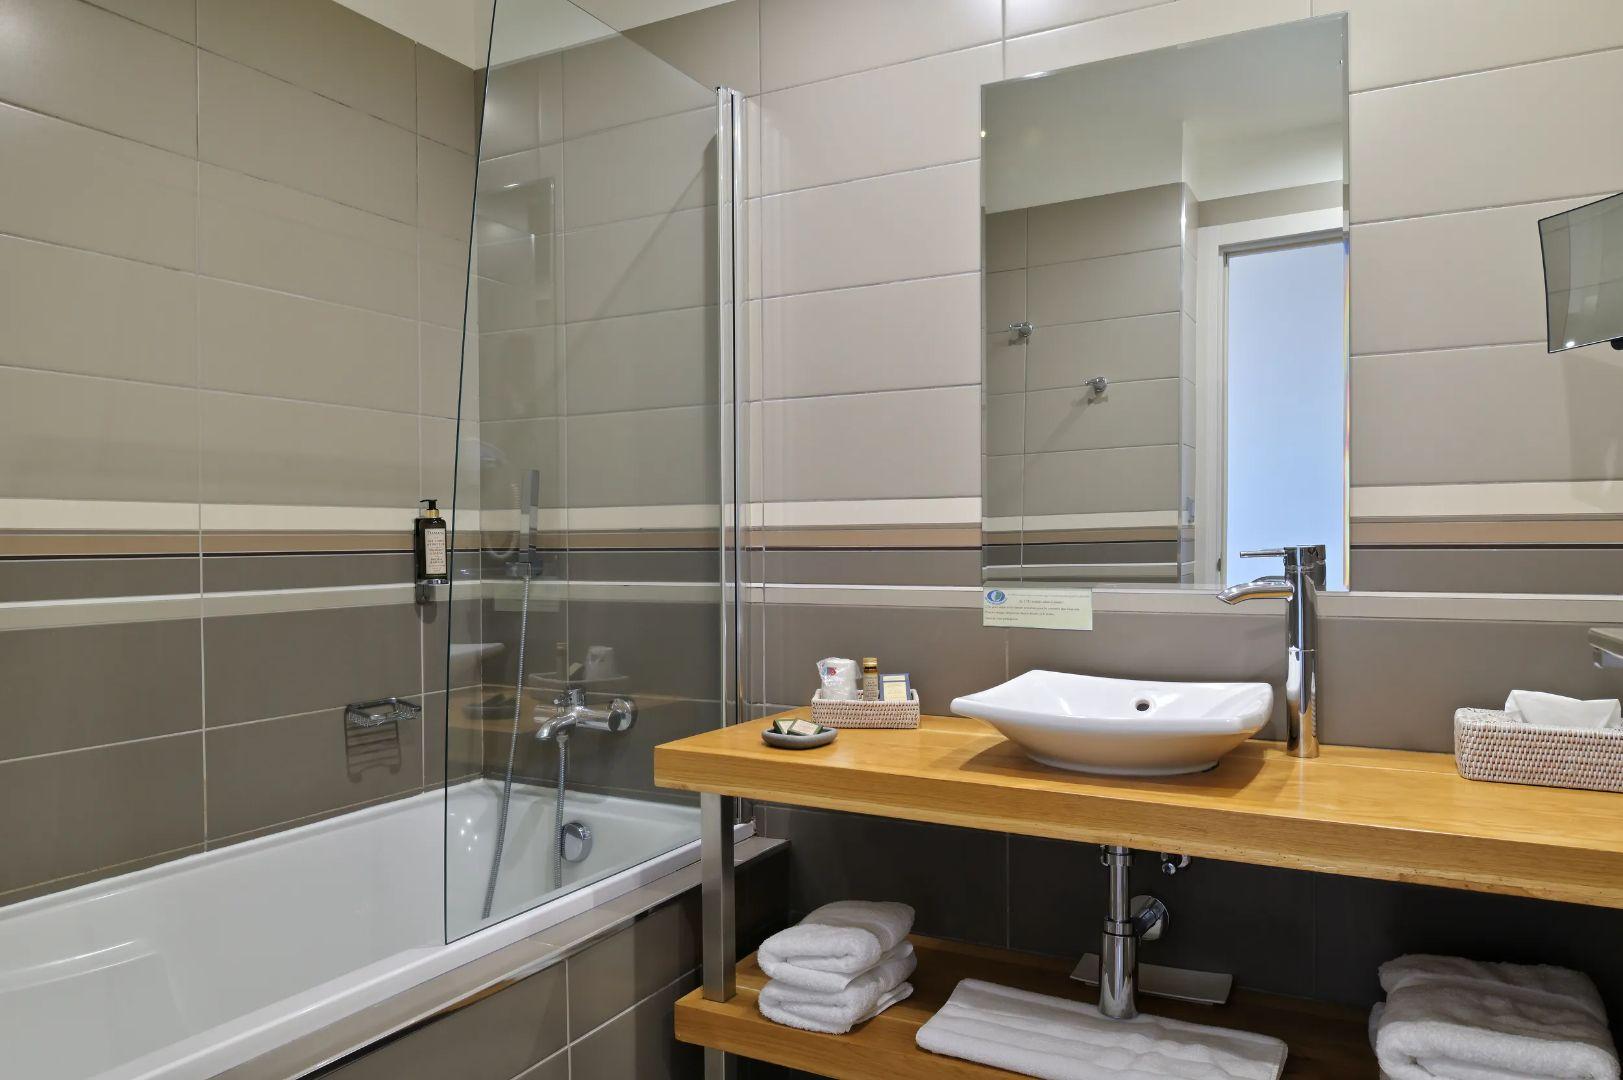 Salle de bain équipée dans notre hôtel en Corse-du-Sud